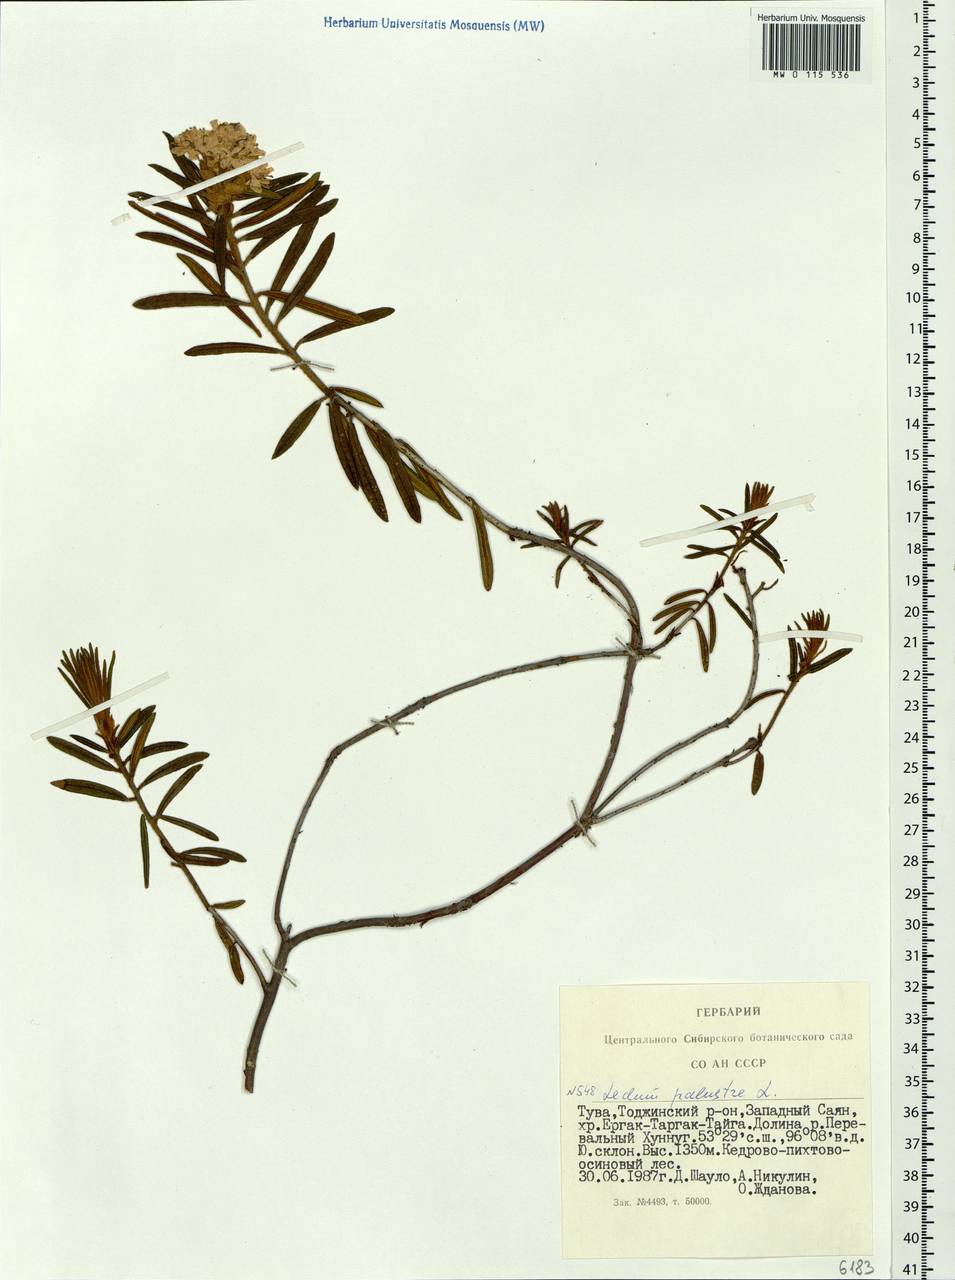 Rhododendron tomentosum (Stokes) Harmaja, Siberia, Altai & Sayany Mountains (S2) (Russia)